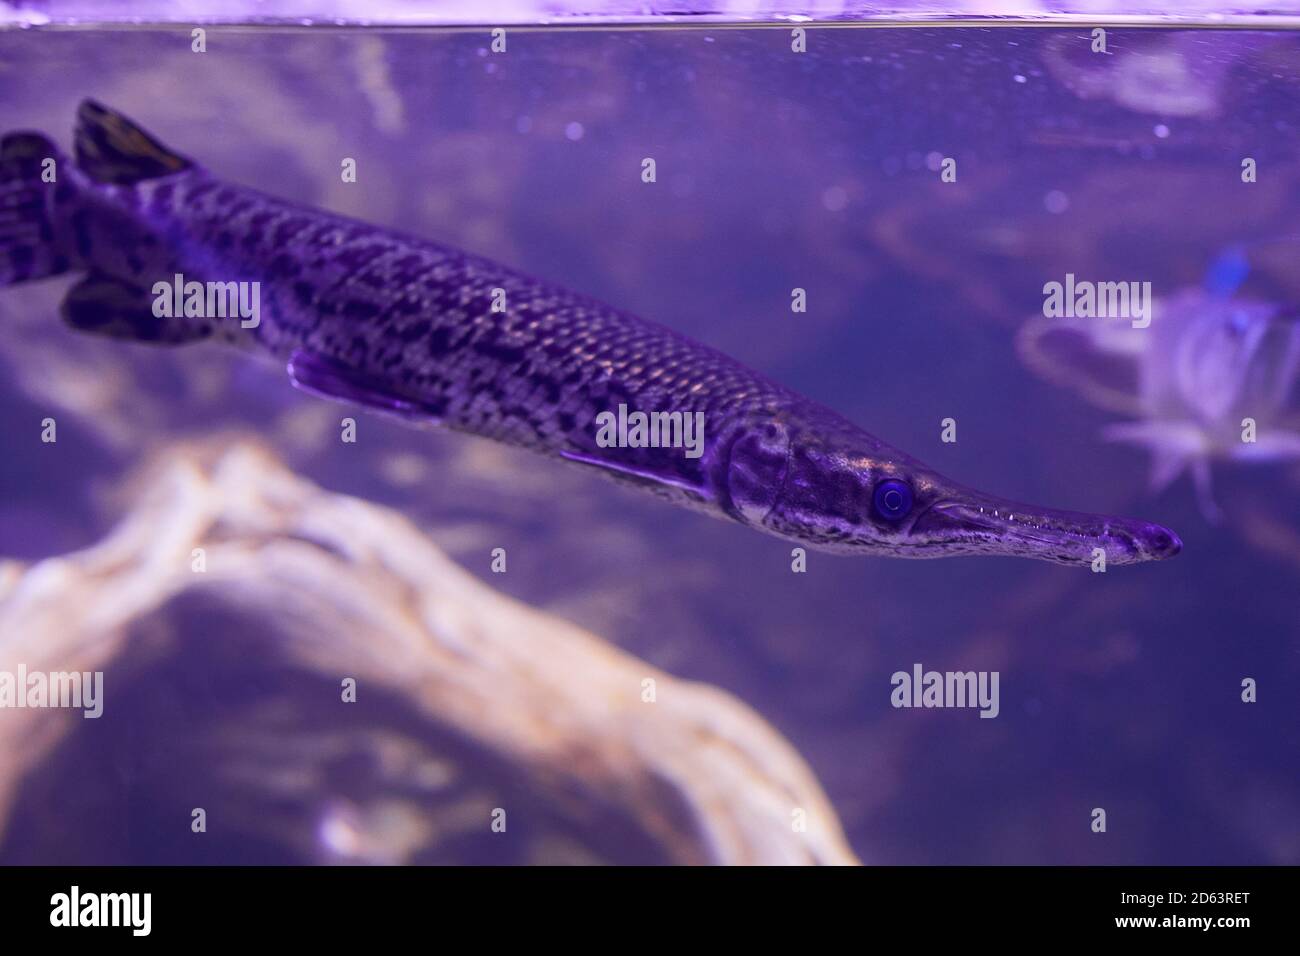 Close up of Spotted gar (Lepisosteus oculatus) swimming at aquarium Stock Photo